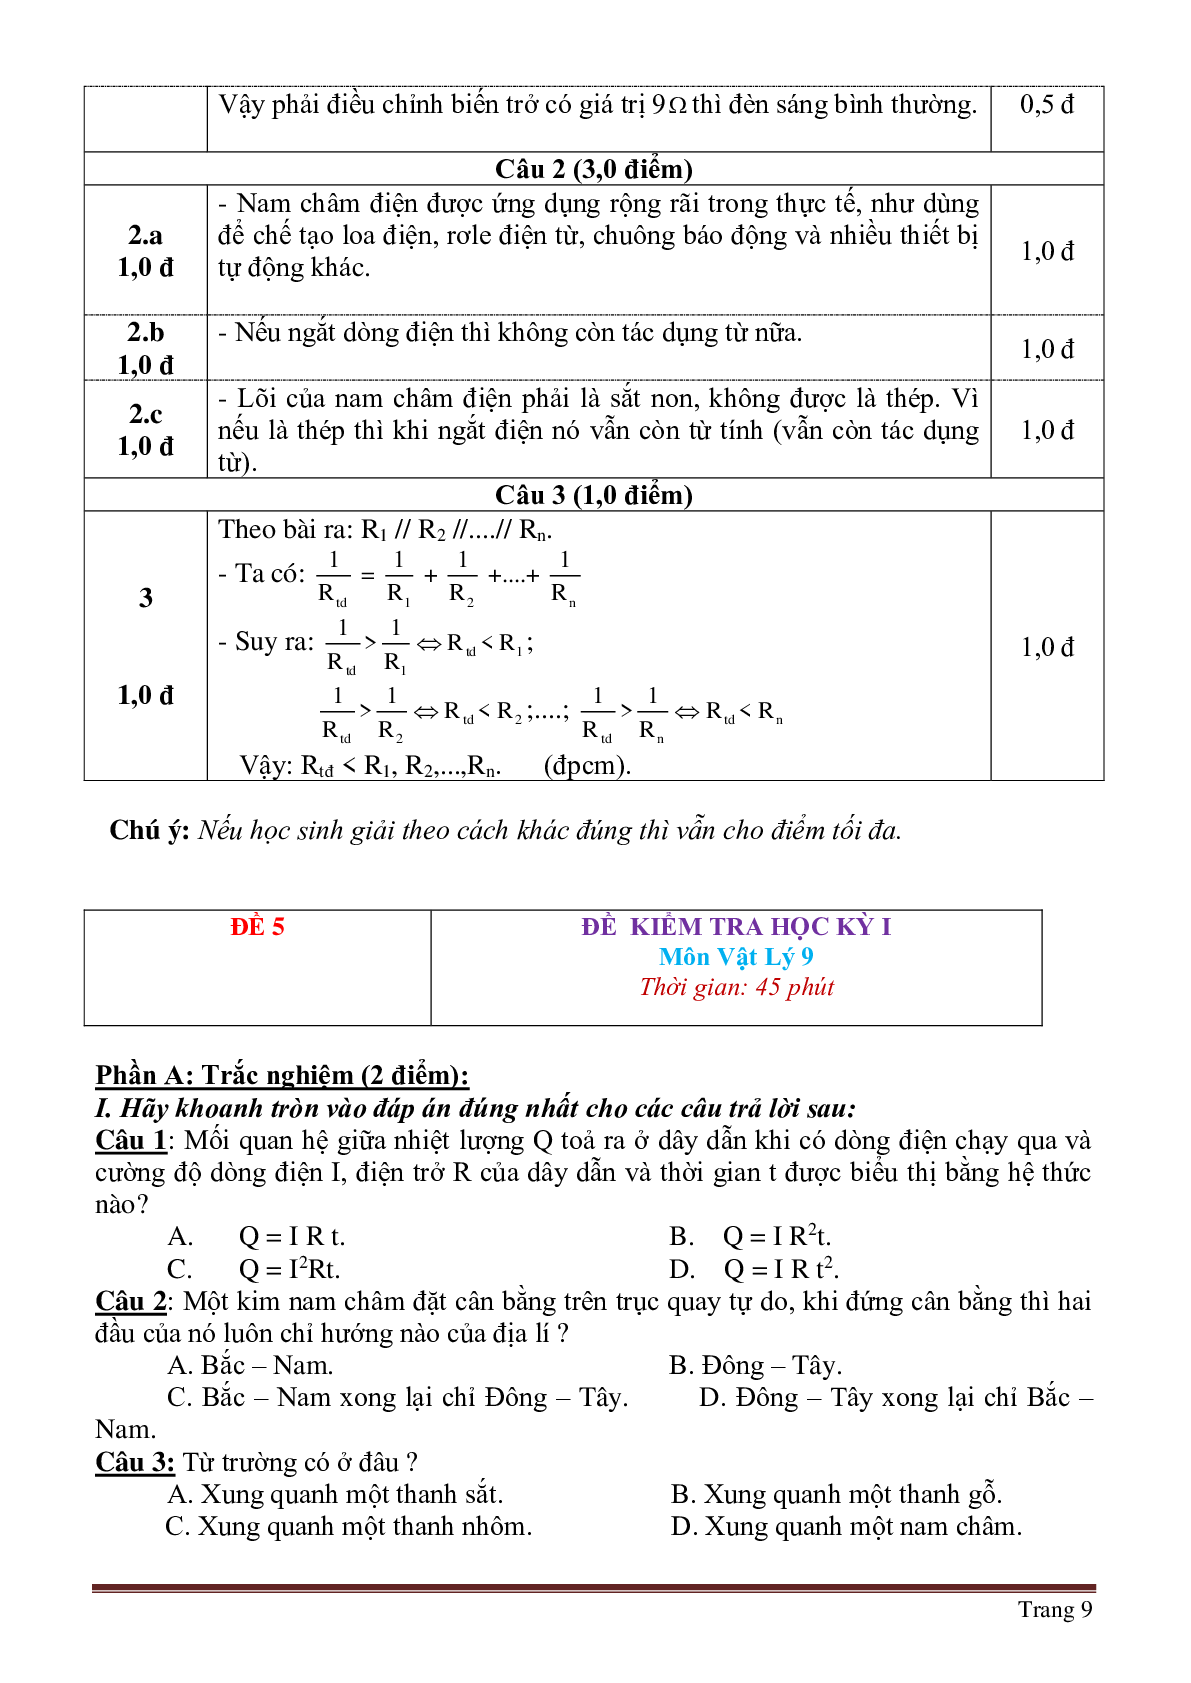 Bộ 30 đề thi học kì 1 môn Vật lý lớp 9 có đáp án (trang 9)